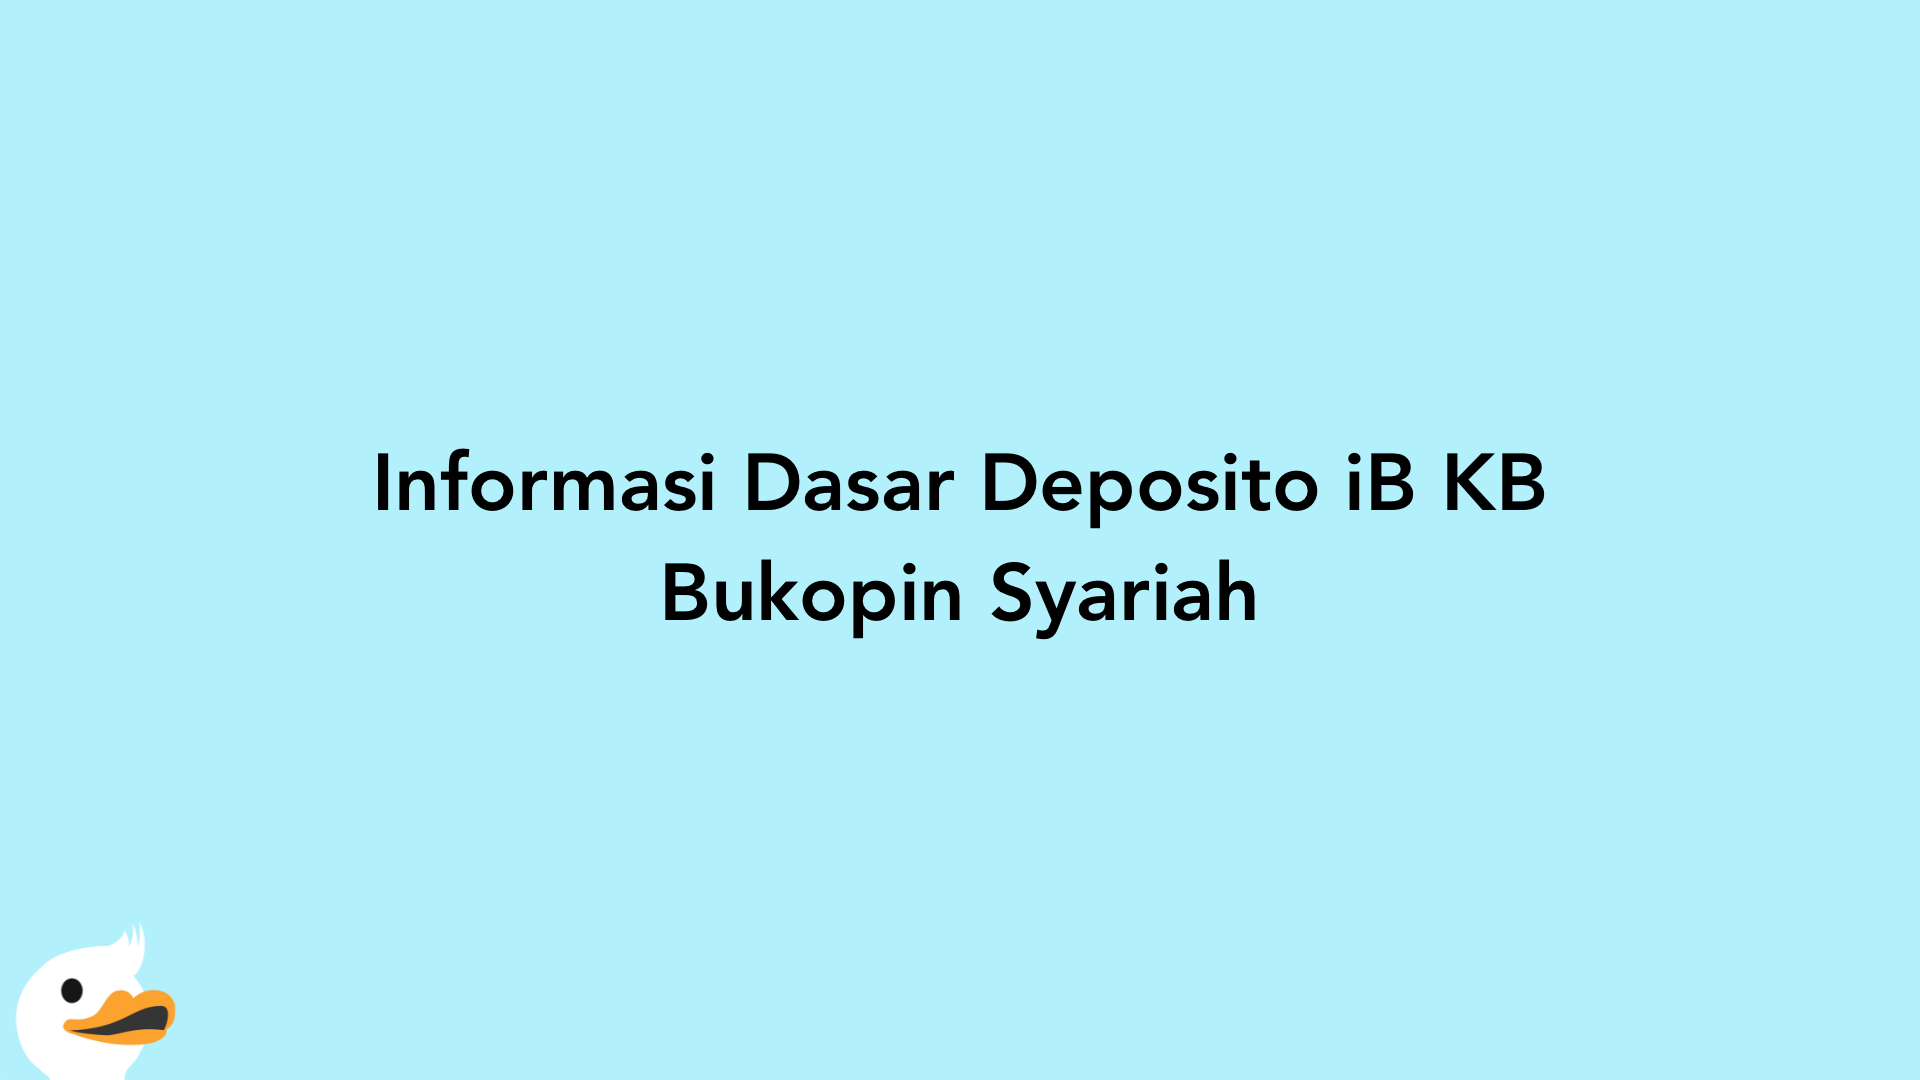 Informasi Dasar Deposito iB KB Bukopin Syariah